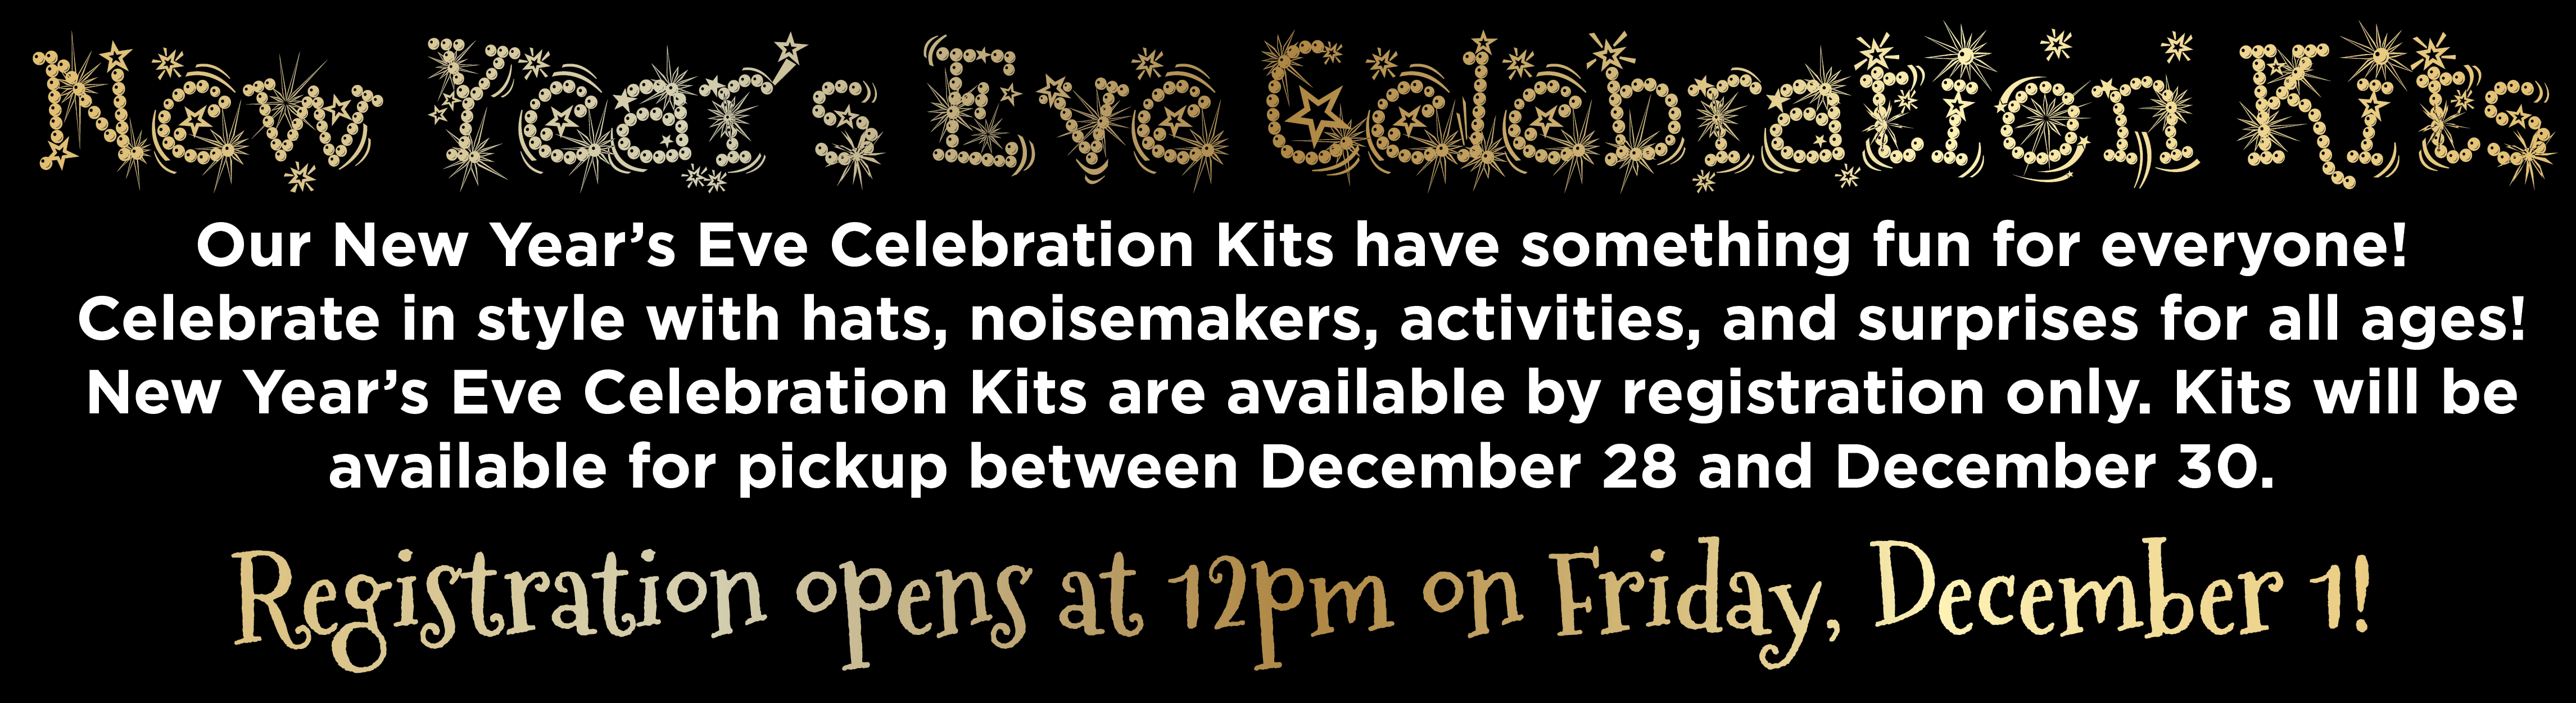 New Year’s Eve Celebration Kits